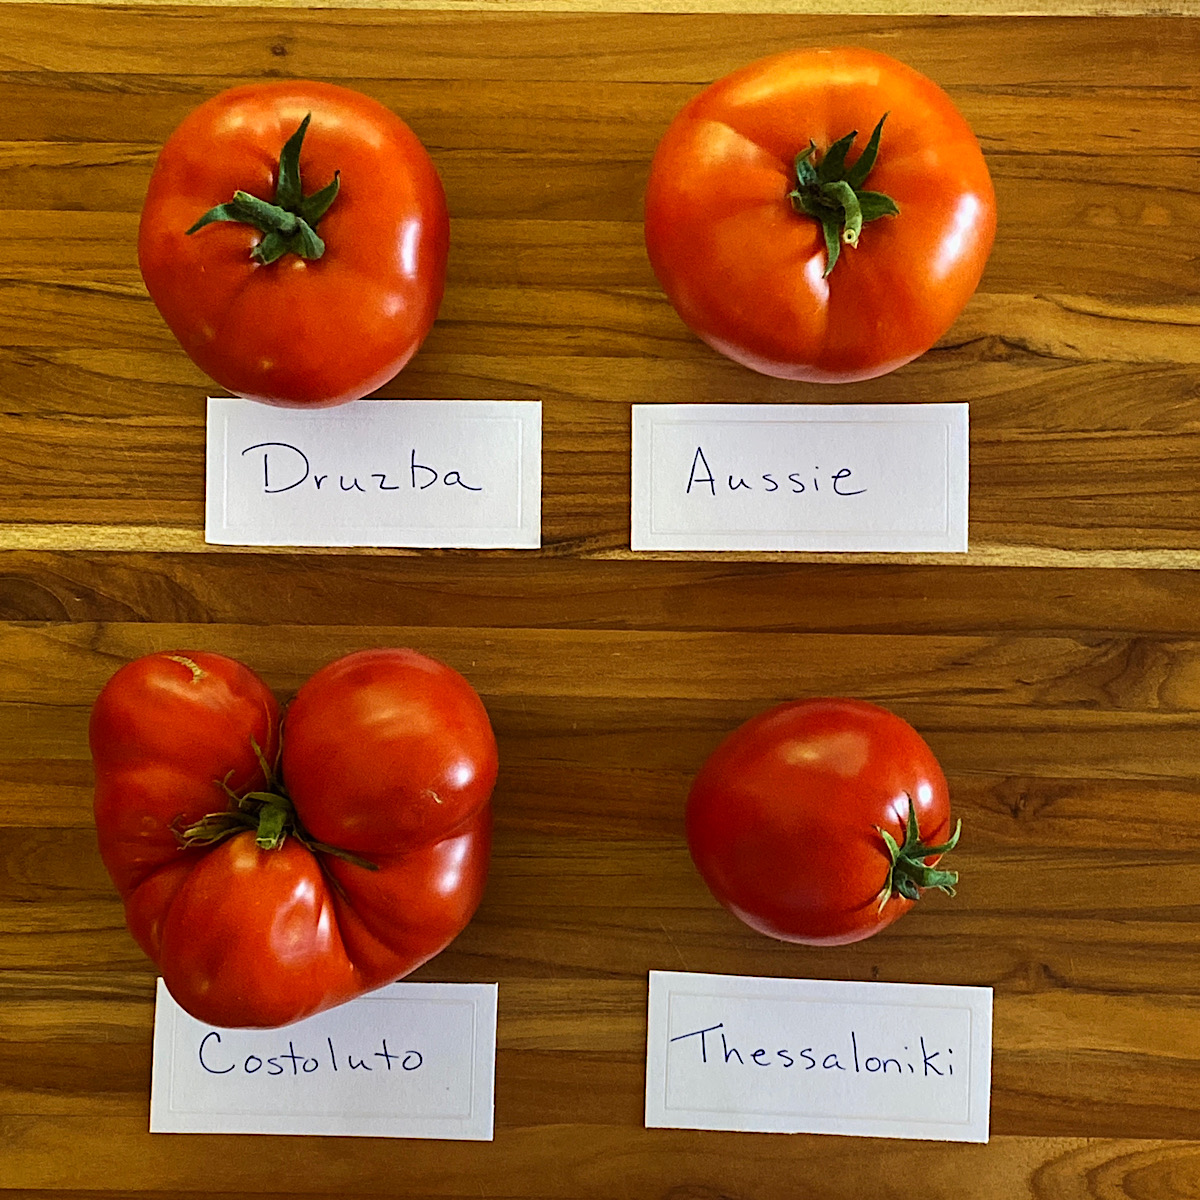 Four varieties of red heirloom tomatoes